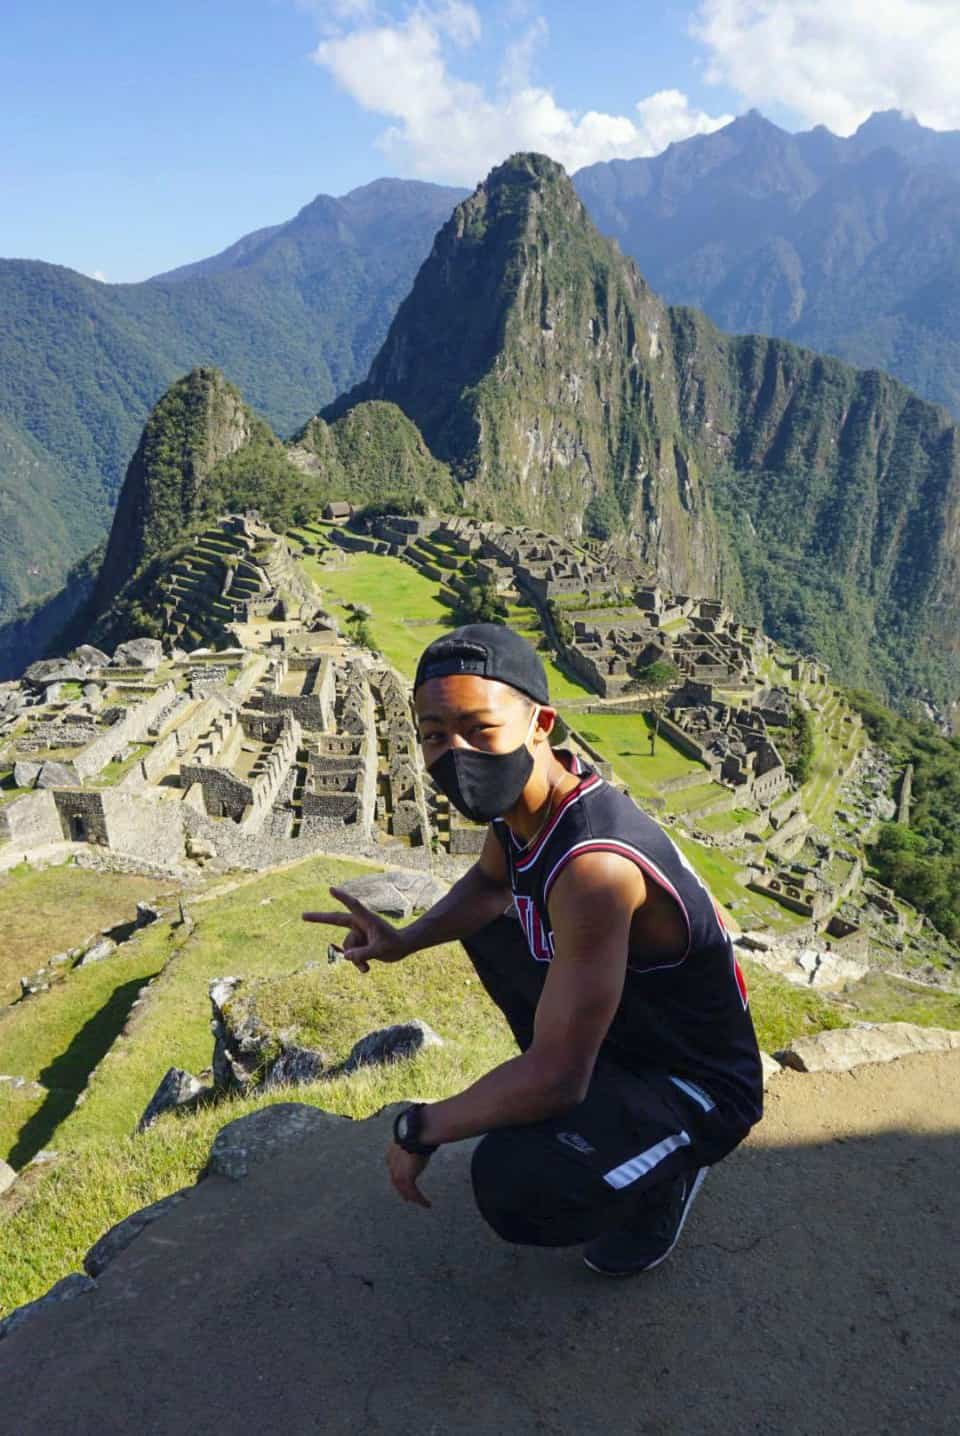 السائح الوحيد الذي فتحت له السلطات في بيرو موقع ماتشو بيتشو الأثري في ظل جائحة كورونا